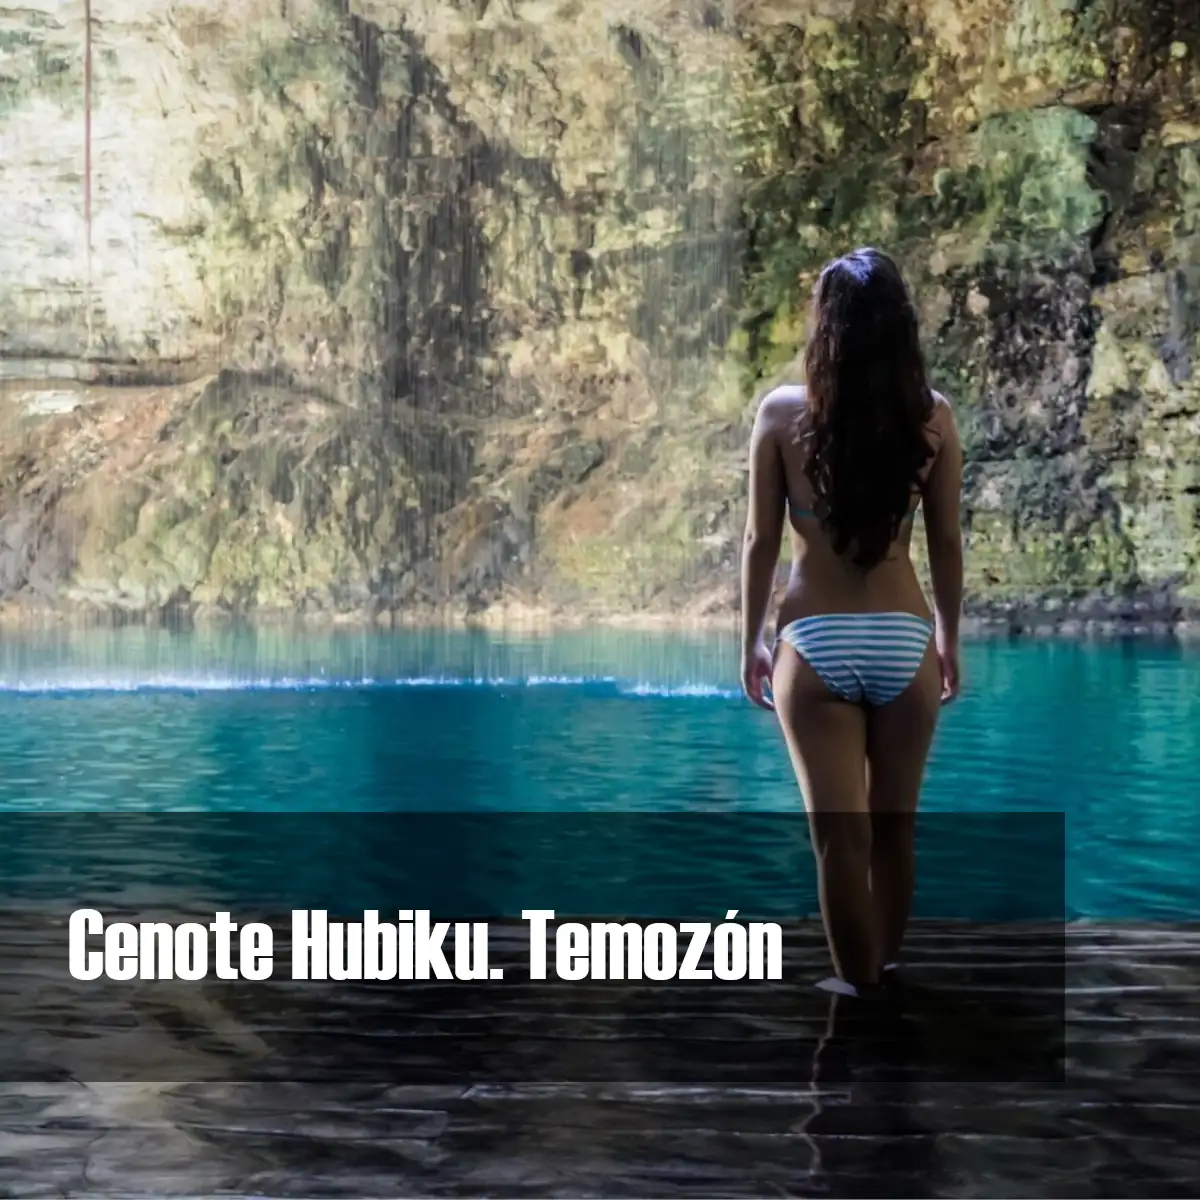 El cenote Hubiku de Temozón